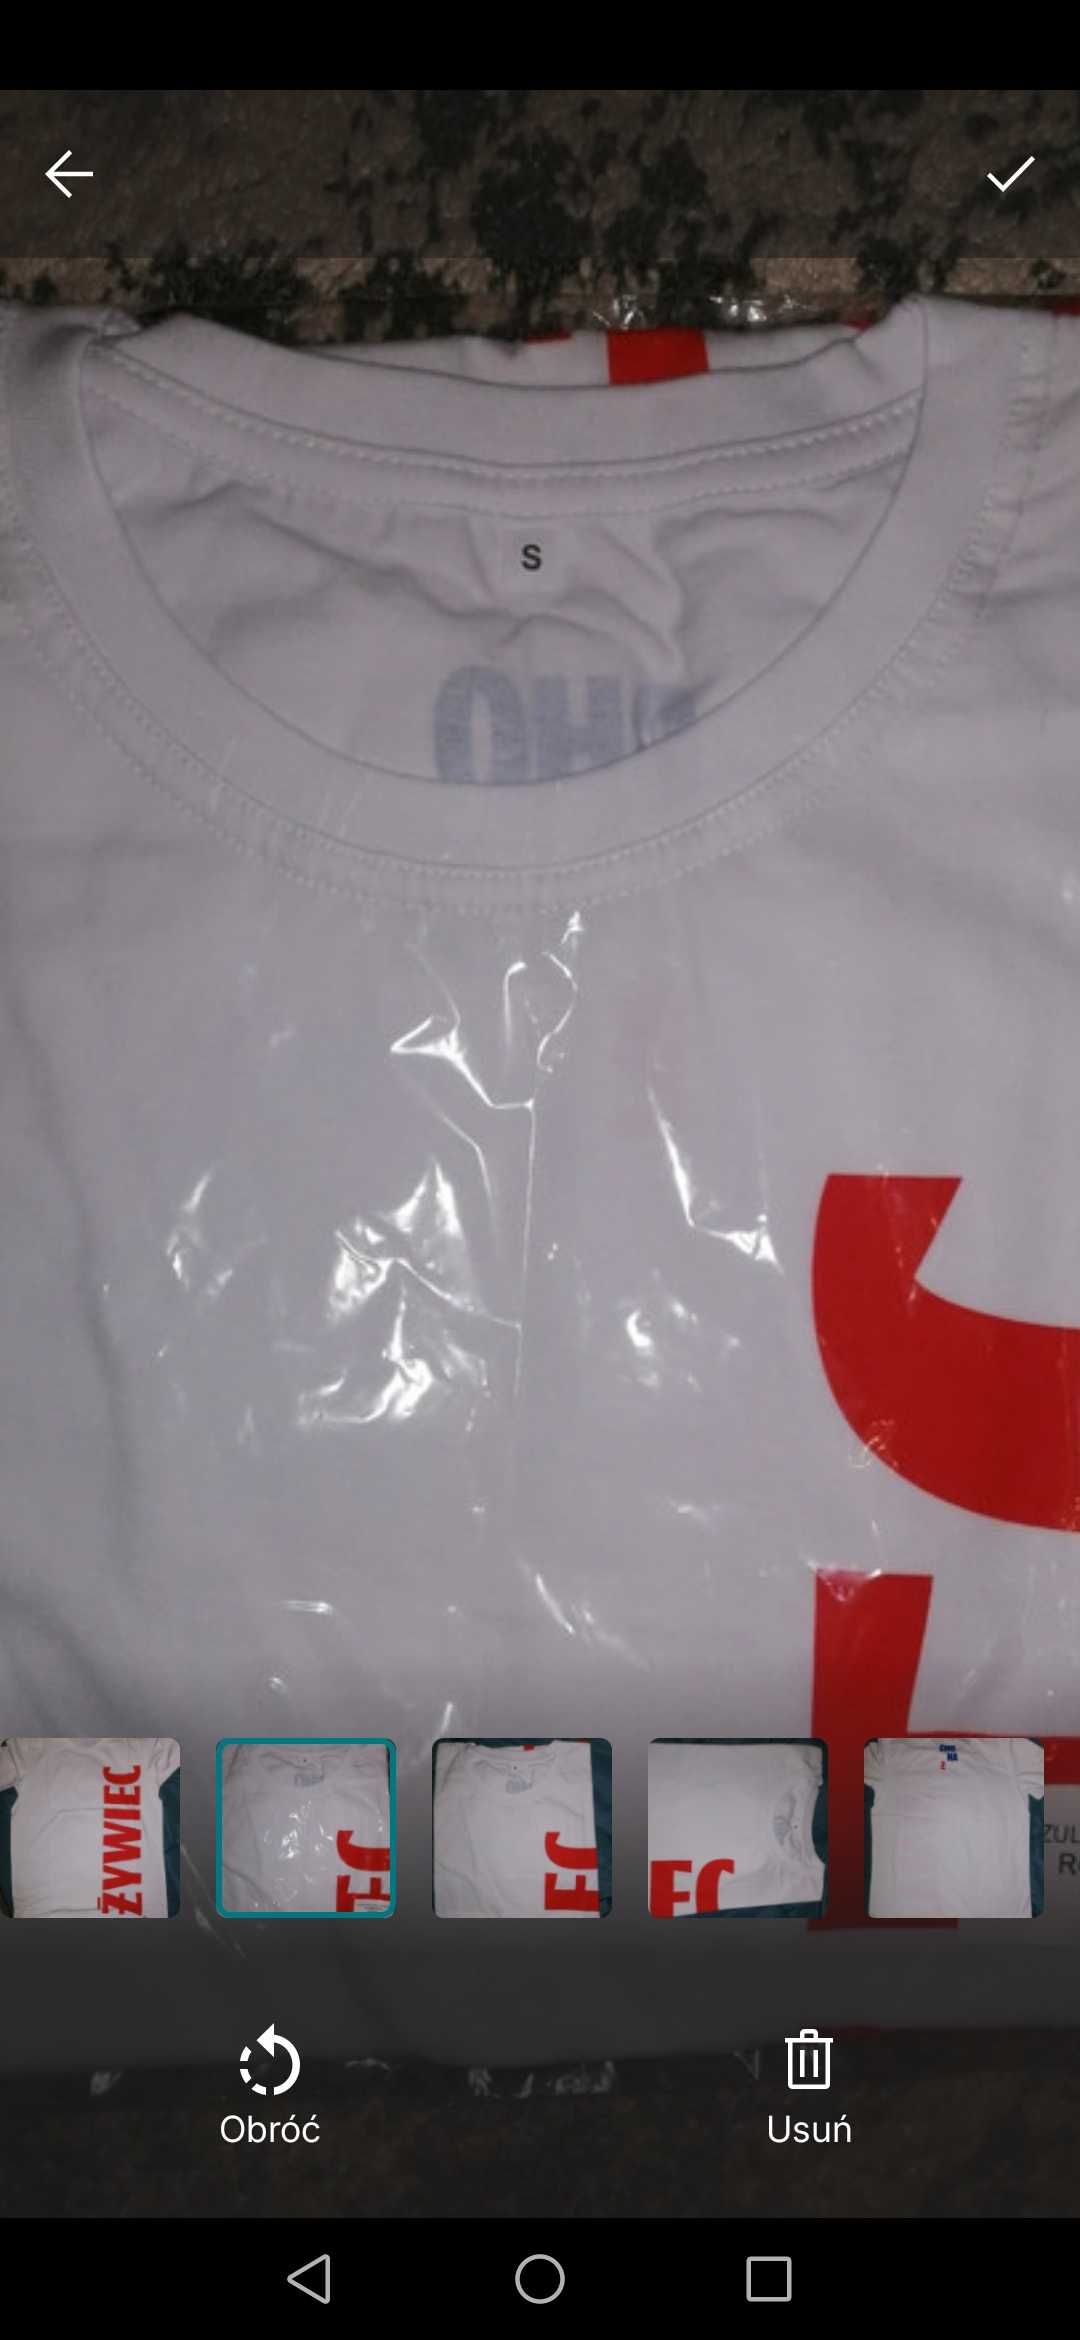 Koszulka męska, T-shirt Żywiec r. S biała z napisem, nowa